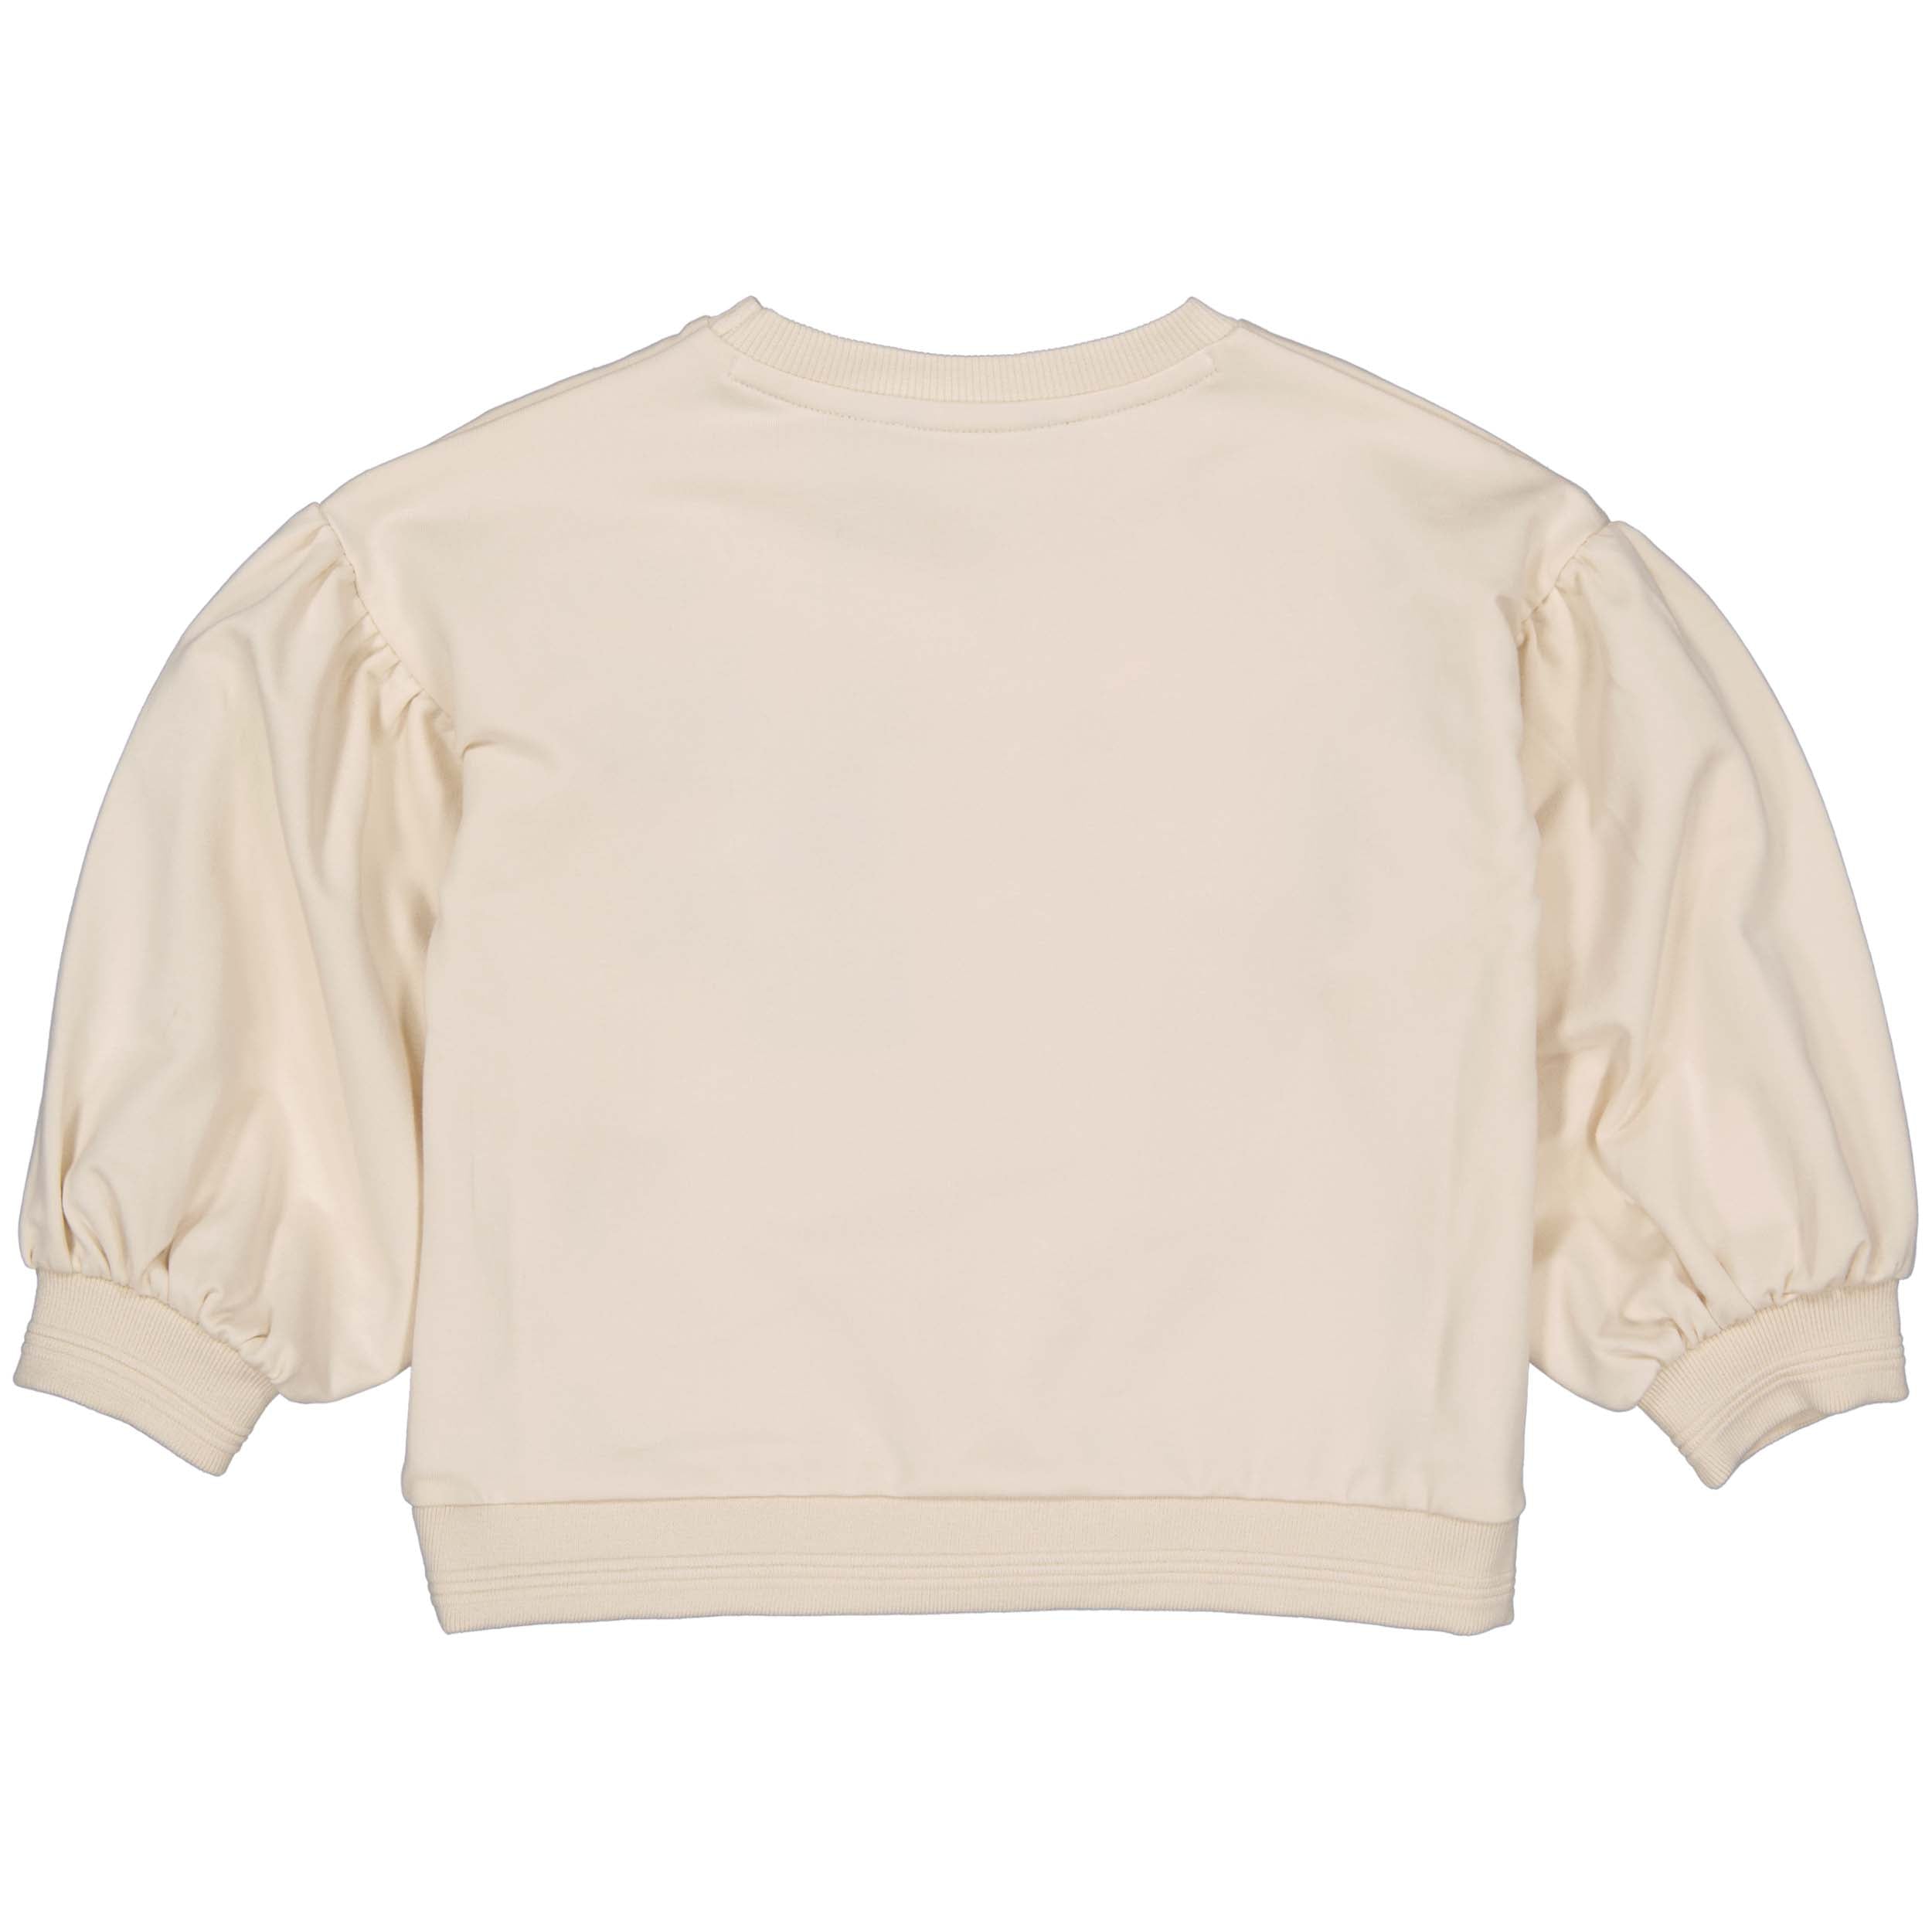 Meisjes Oversized Sweater MIJNTJELS241 van Little Levv in de kleur Ivory White in maat 128.